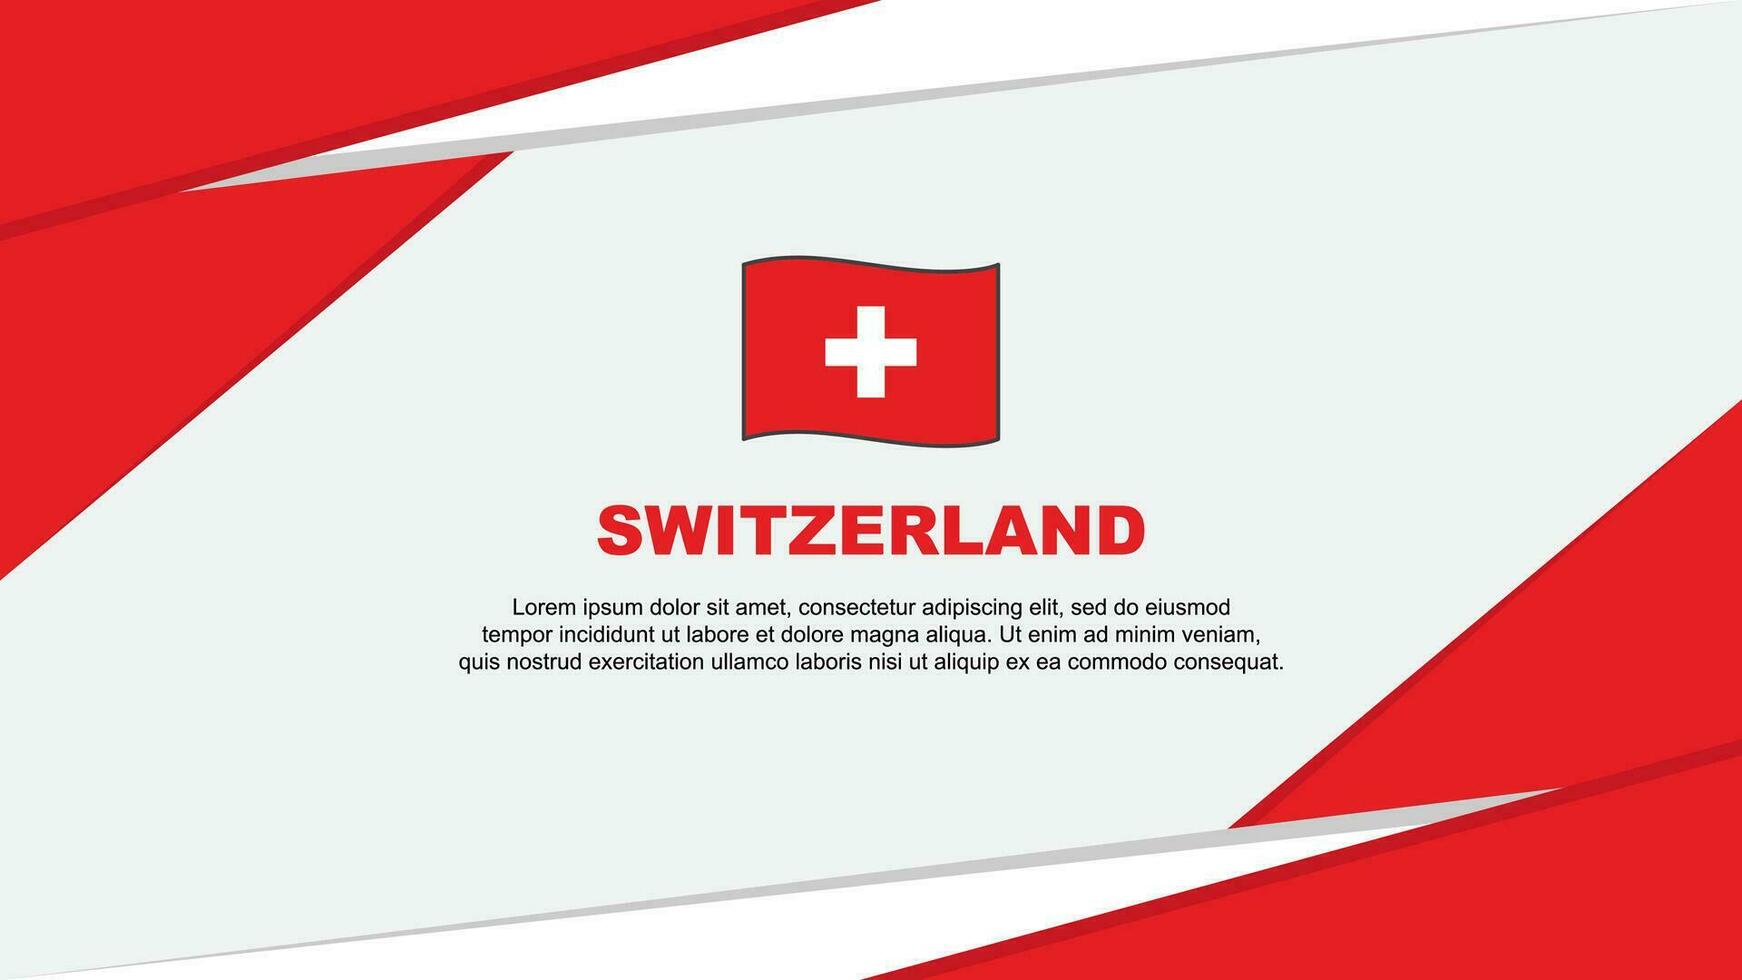 Switzerland Flag Abstract Background Design Template. Switzerland Independence Day Banner Cartoon Vector Illustration. Switzerland